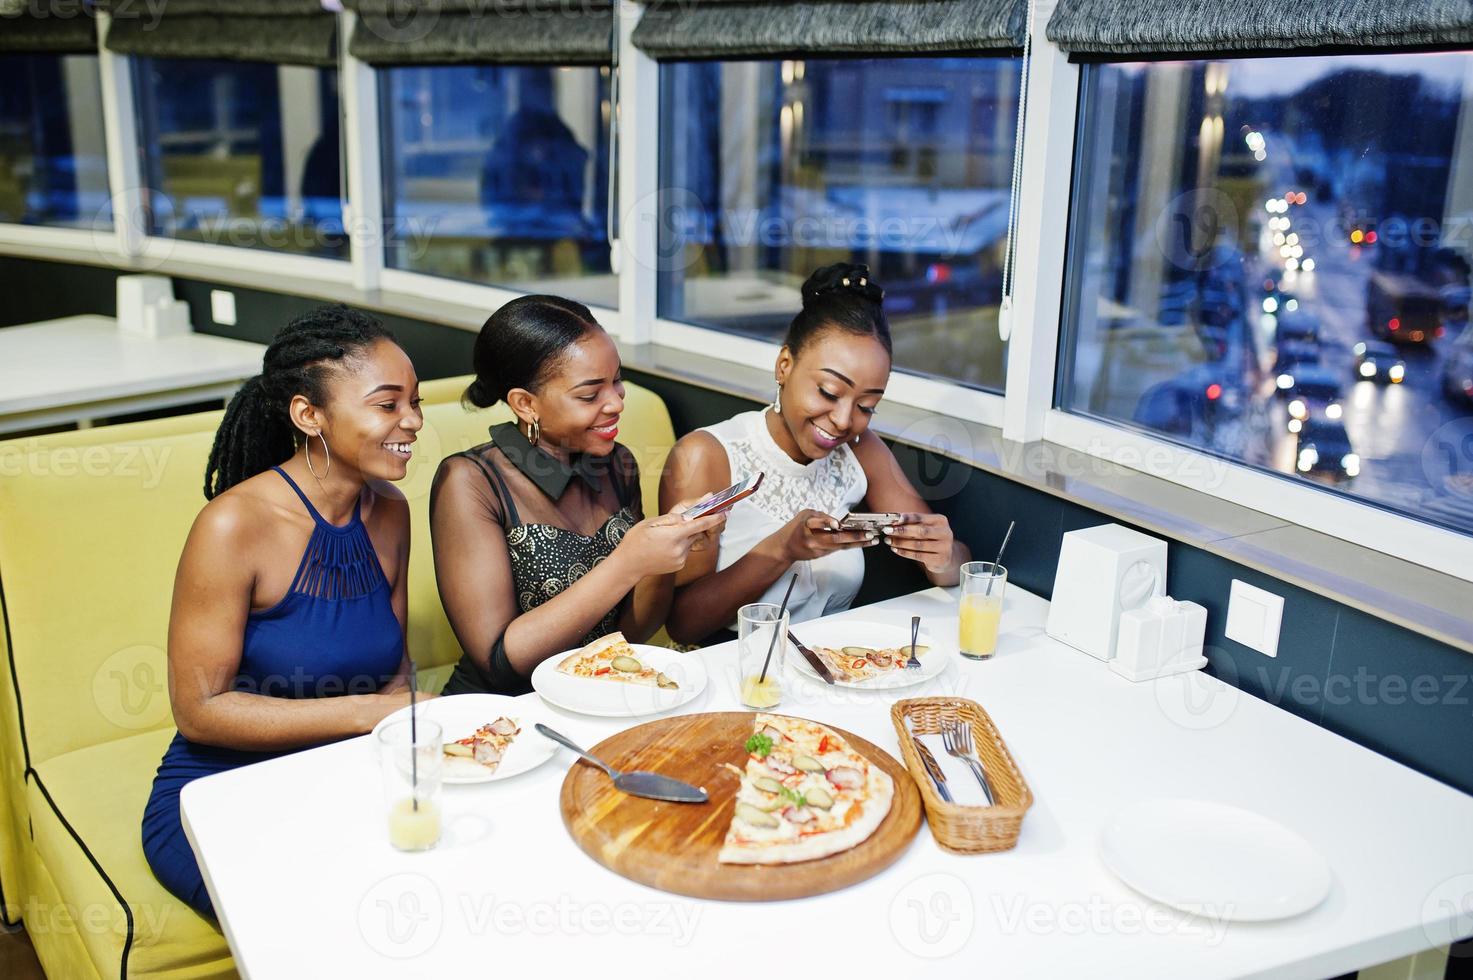 trois femmes africaines en robe posant au restaurant, mangeant de la pizza et buvant du jus, faisant des photos au téléphone.